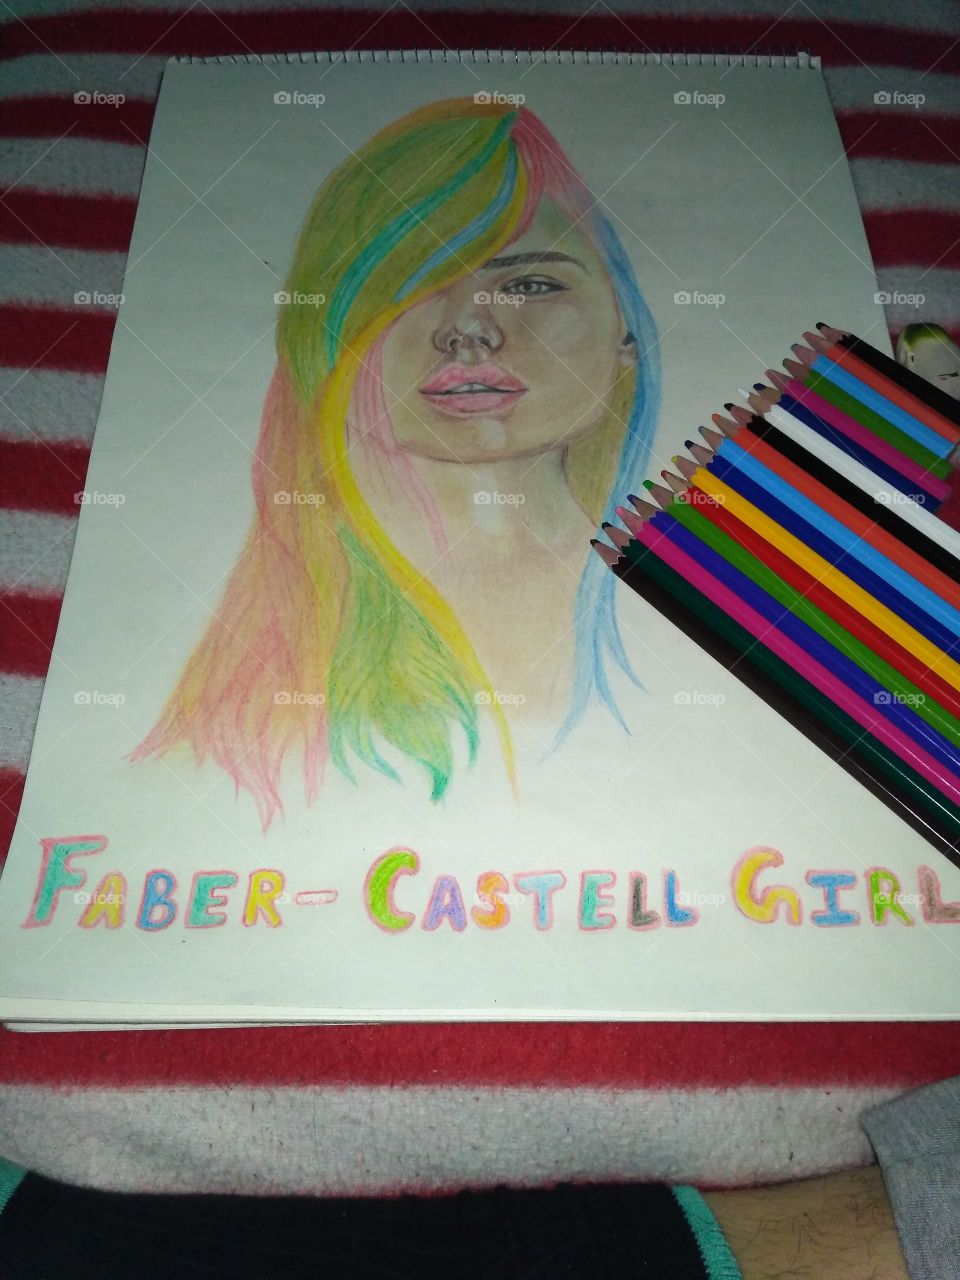 Faber Castell girl